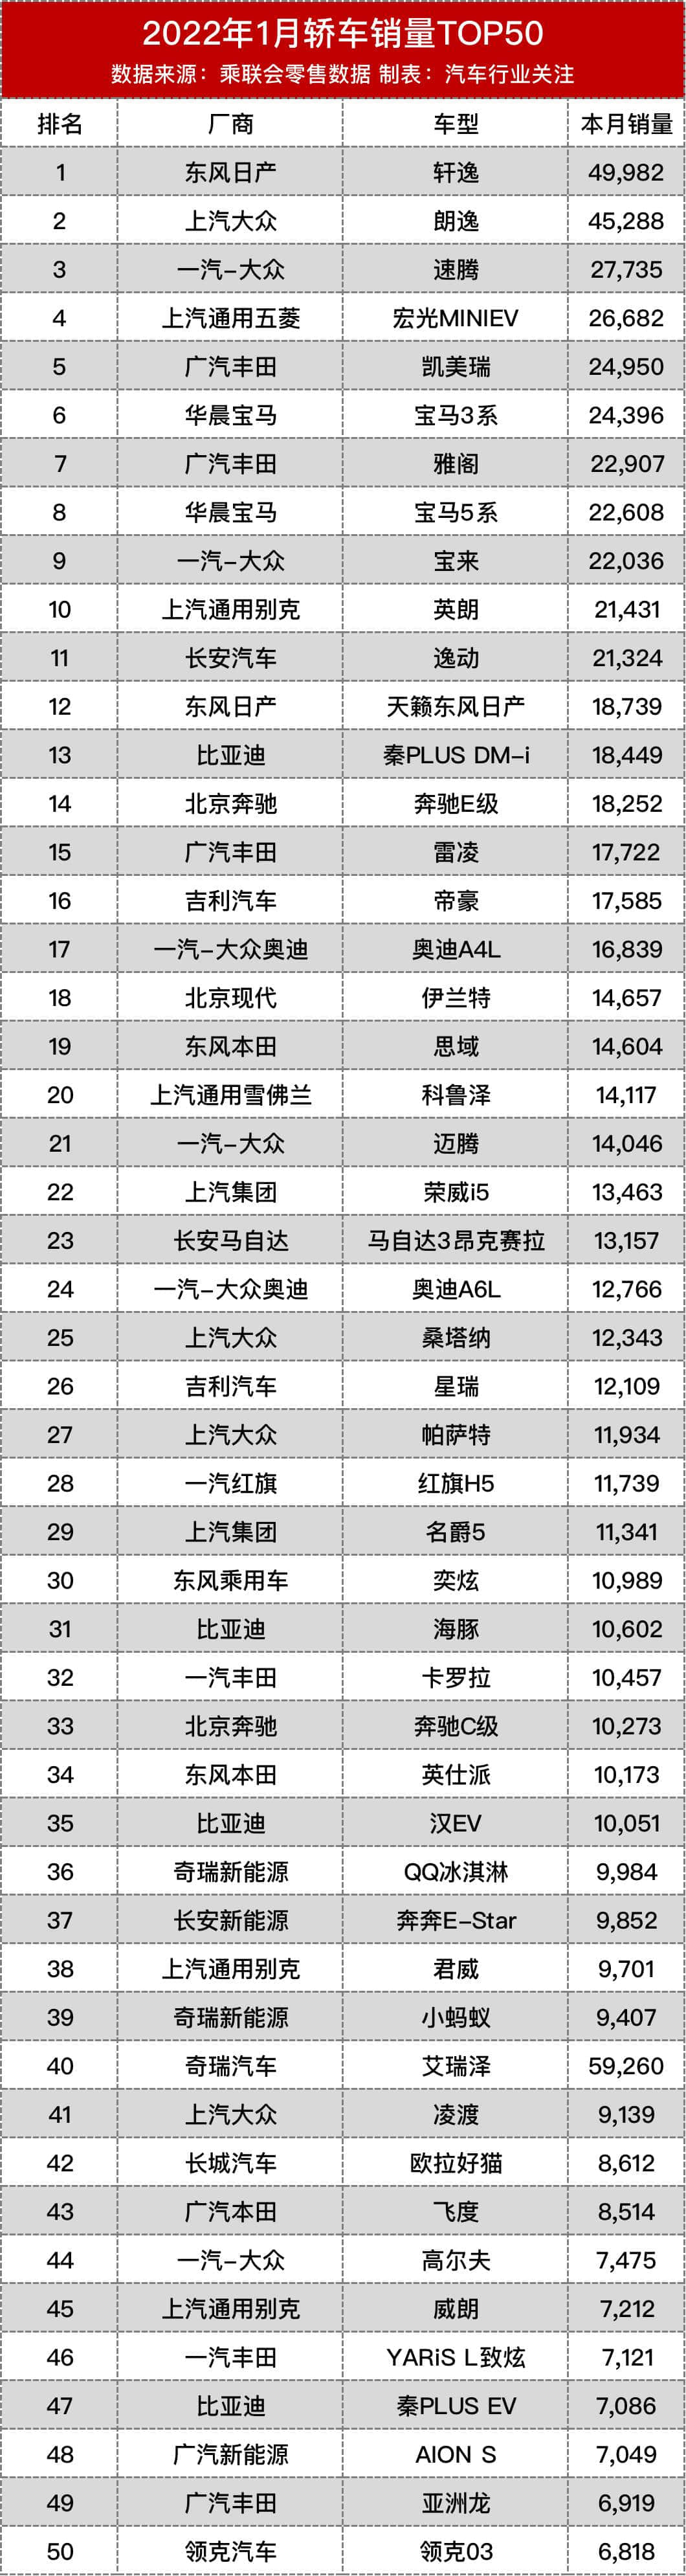 老虎车网丨2022年1月畅销车型榜